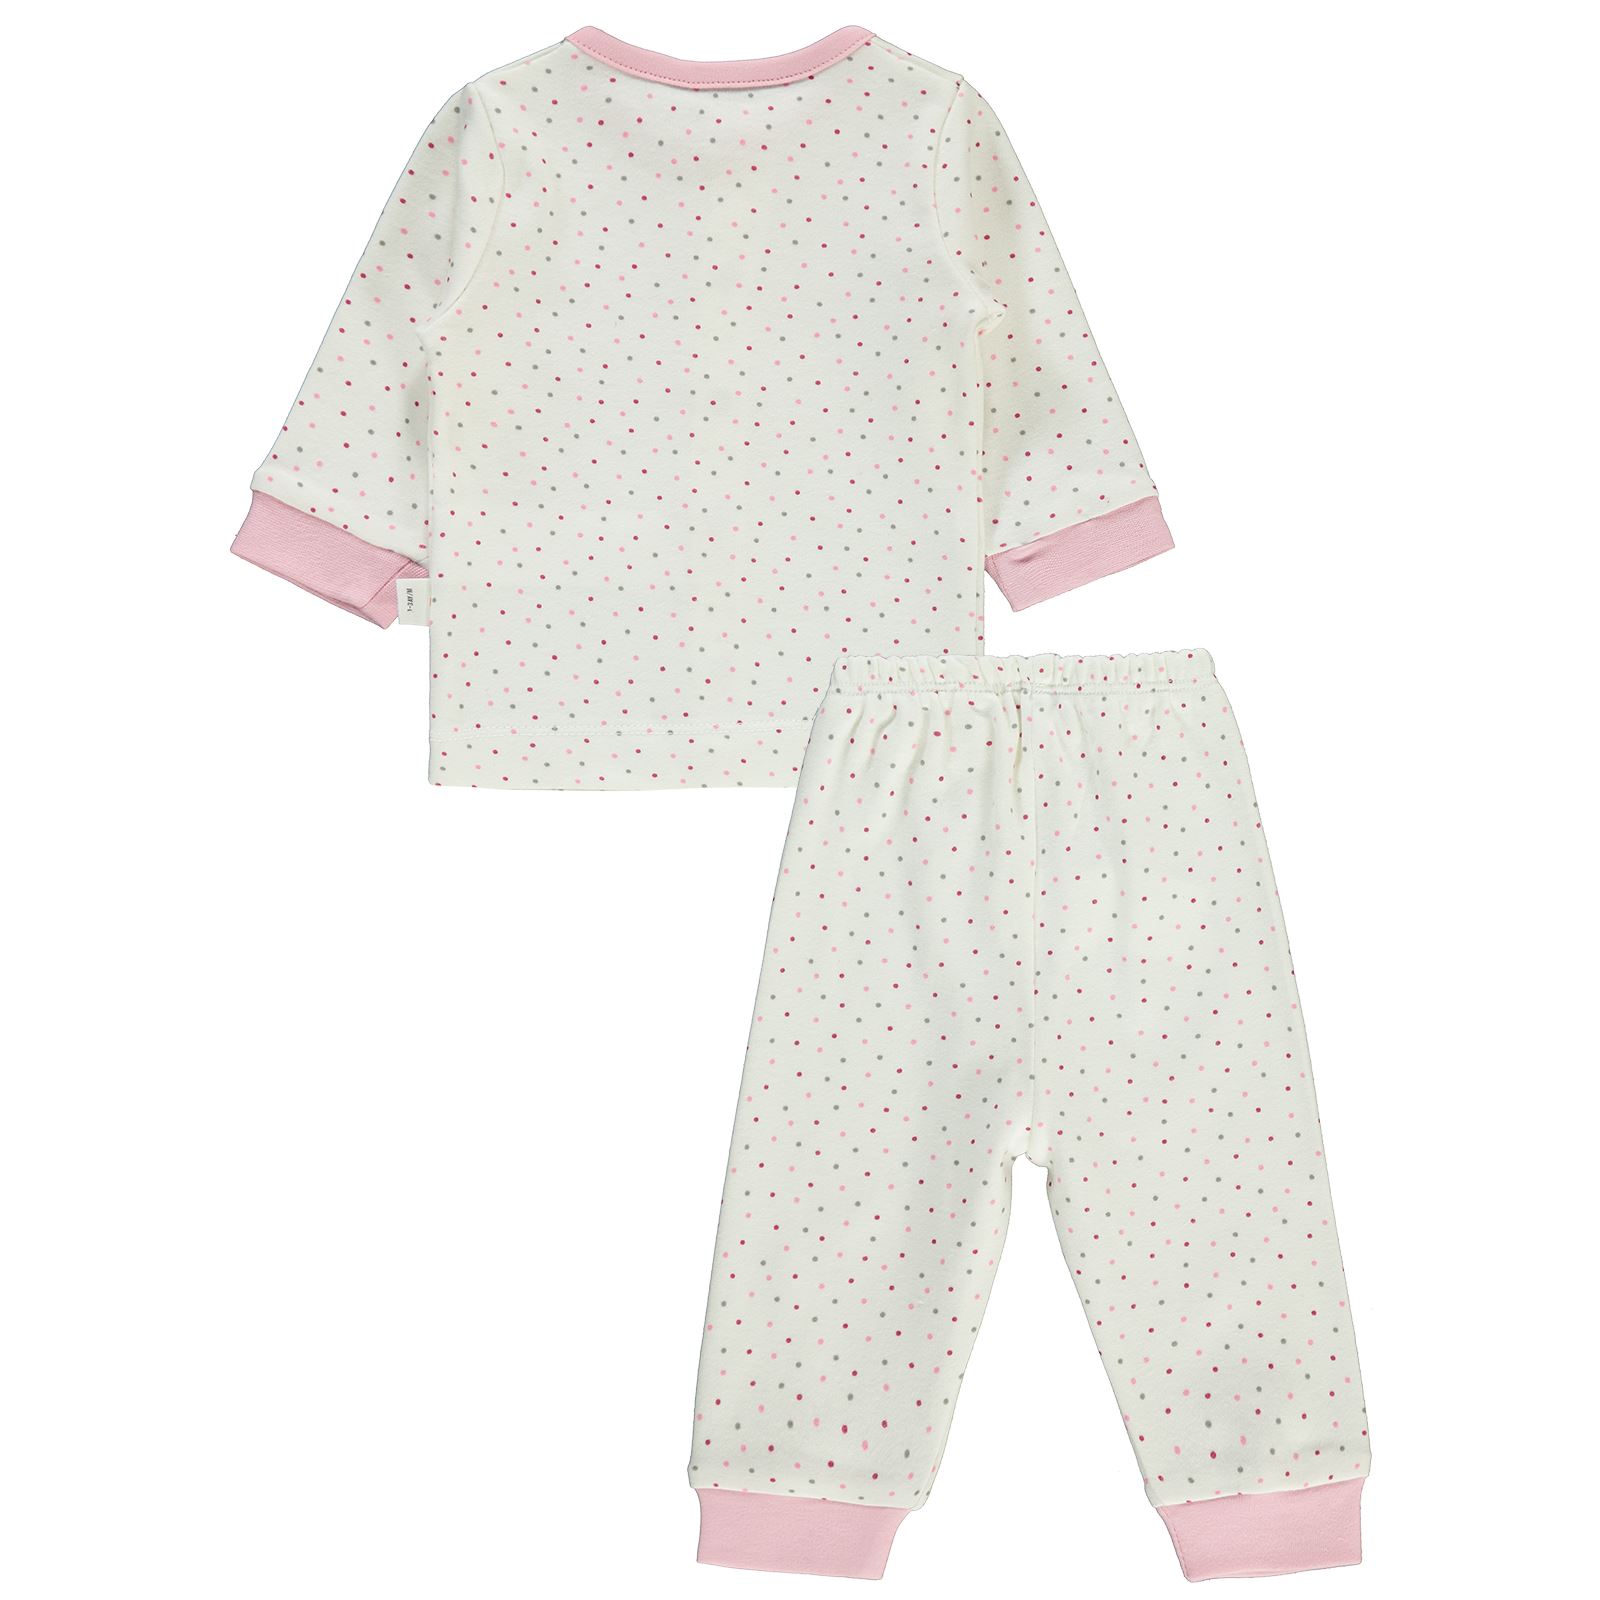 Civil Baby Bebek Pijama Takımı 1-3 Ay Pembe